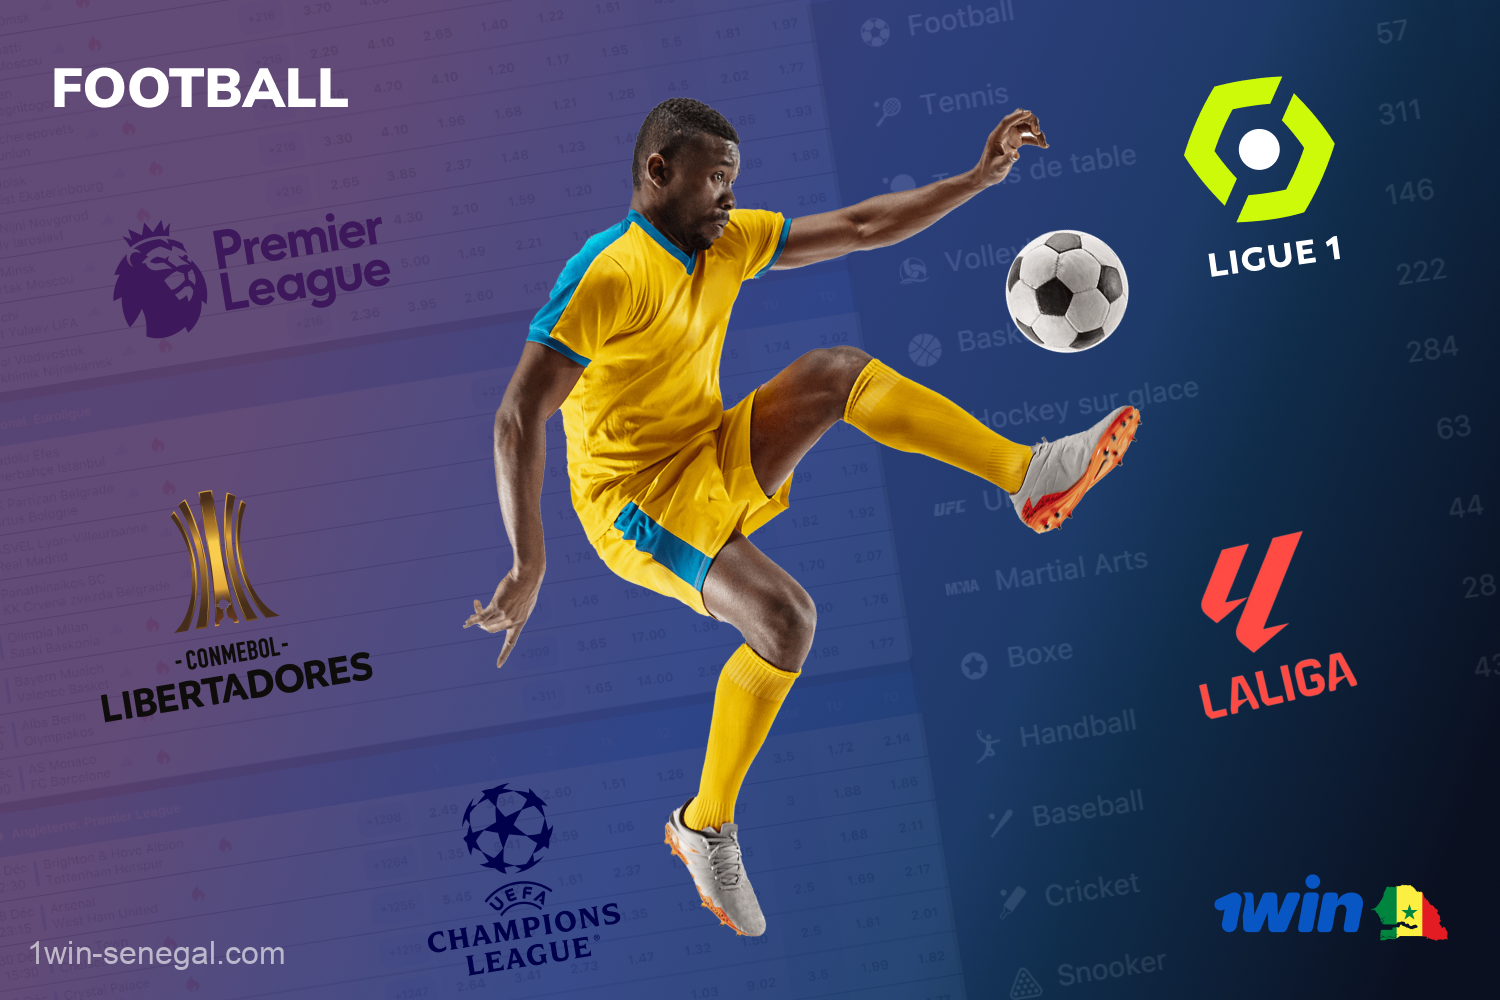 Les fans de football sénégalais peuvent parier sur les matchs des principaux championnats de football sur le site web et sur l'application mobile 1win